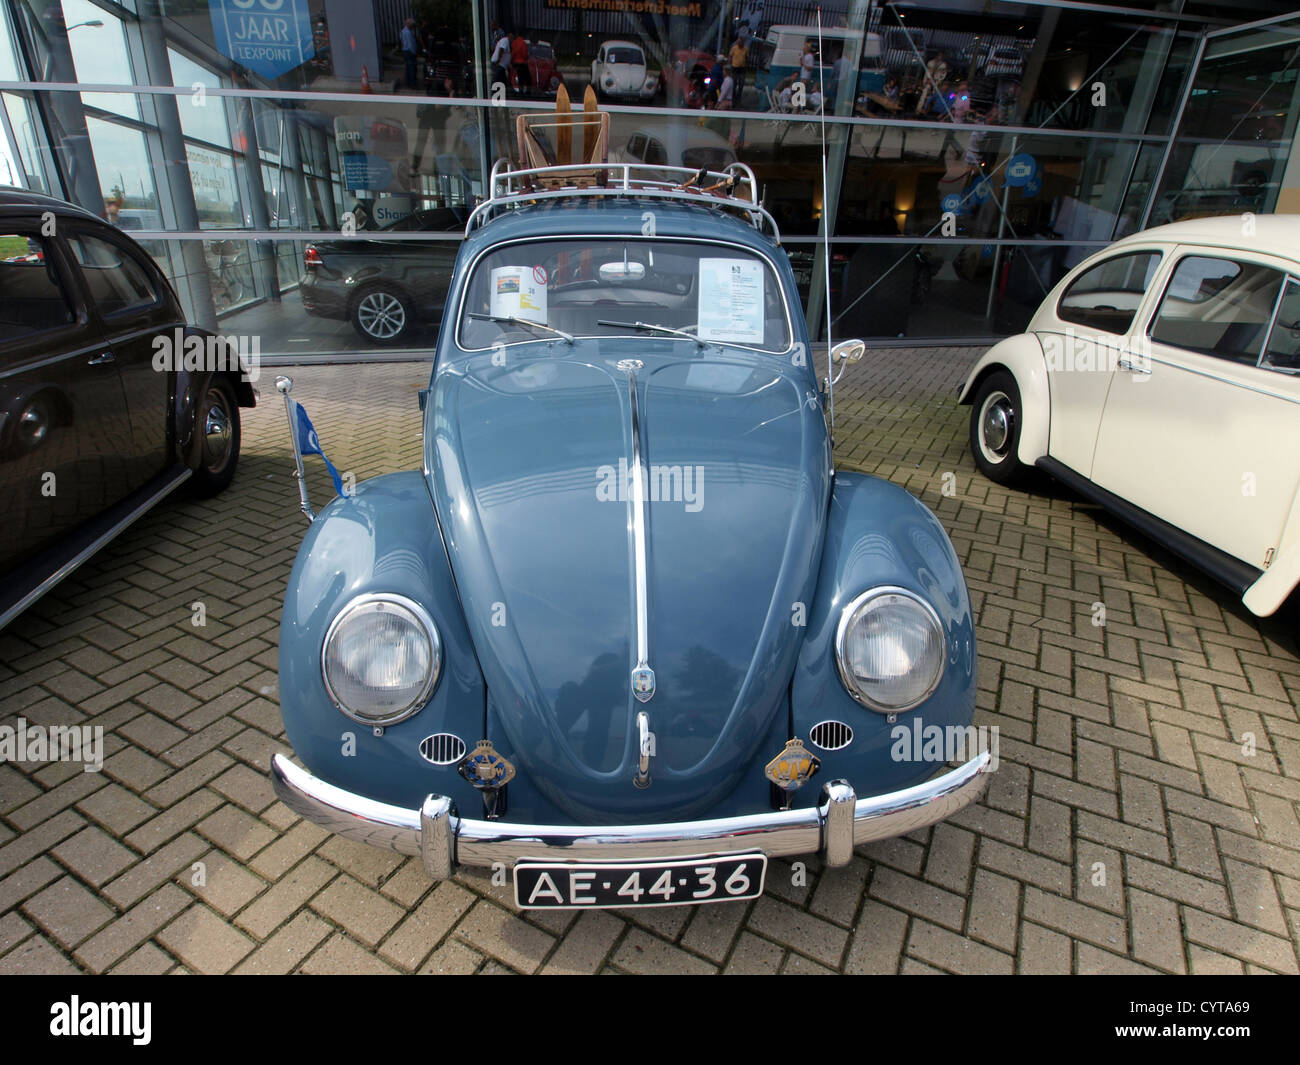 1959 Volkswagen VW 1/11 Standard beetle car Stock Photo